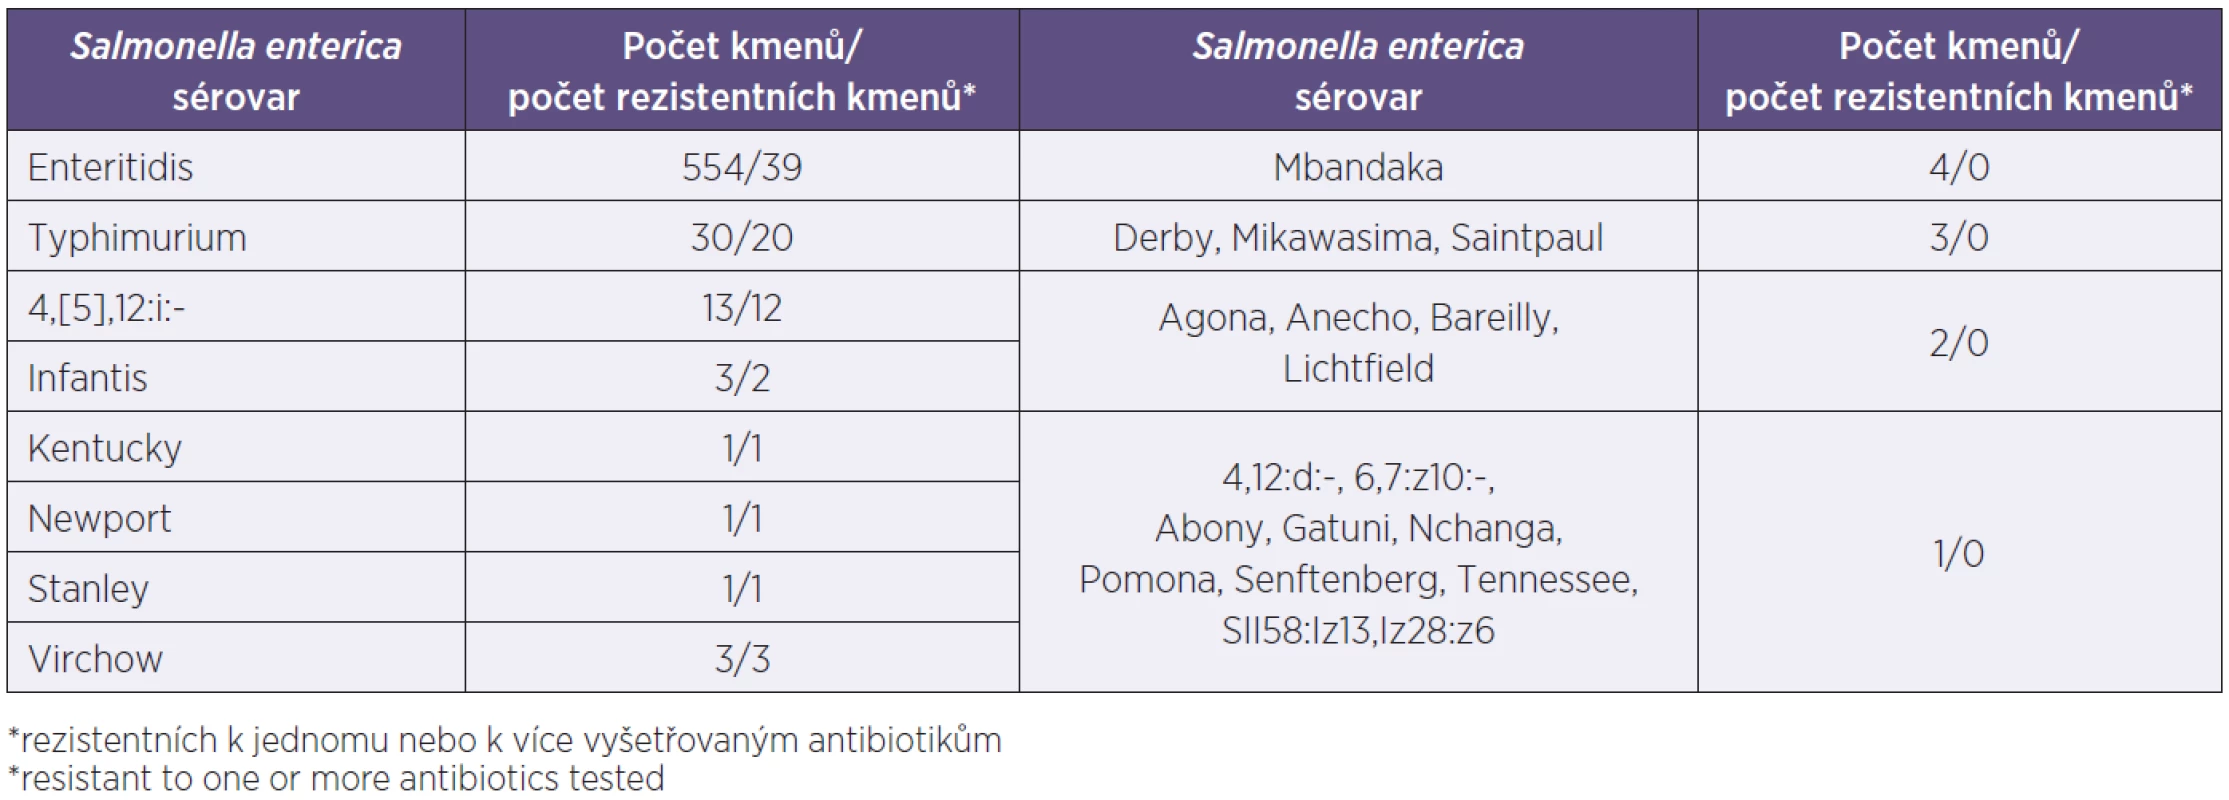 Sérovary &lt;i&gt;Salmonella enterica&lt;/i&gt; v souboru 637 kmenů salmonel, počet kmenů a počet rezistentních kmenů* jednotlivých sérovarů
Table 1. Serovars of &lt;i&gt;Salmonella enterica&lt;/i&gt; among 637 study strains, numbers of strains and resistant strains* by serovar